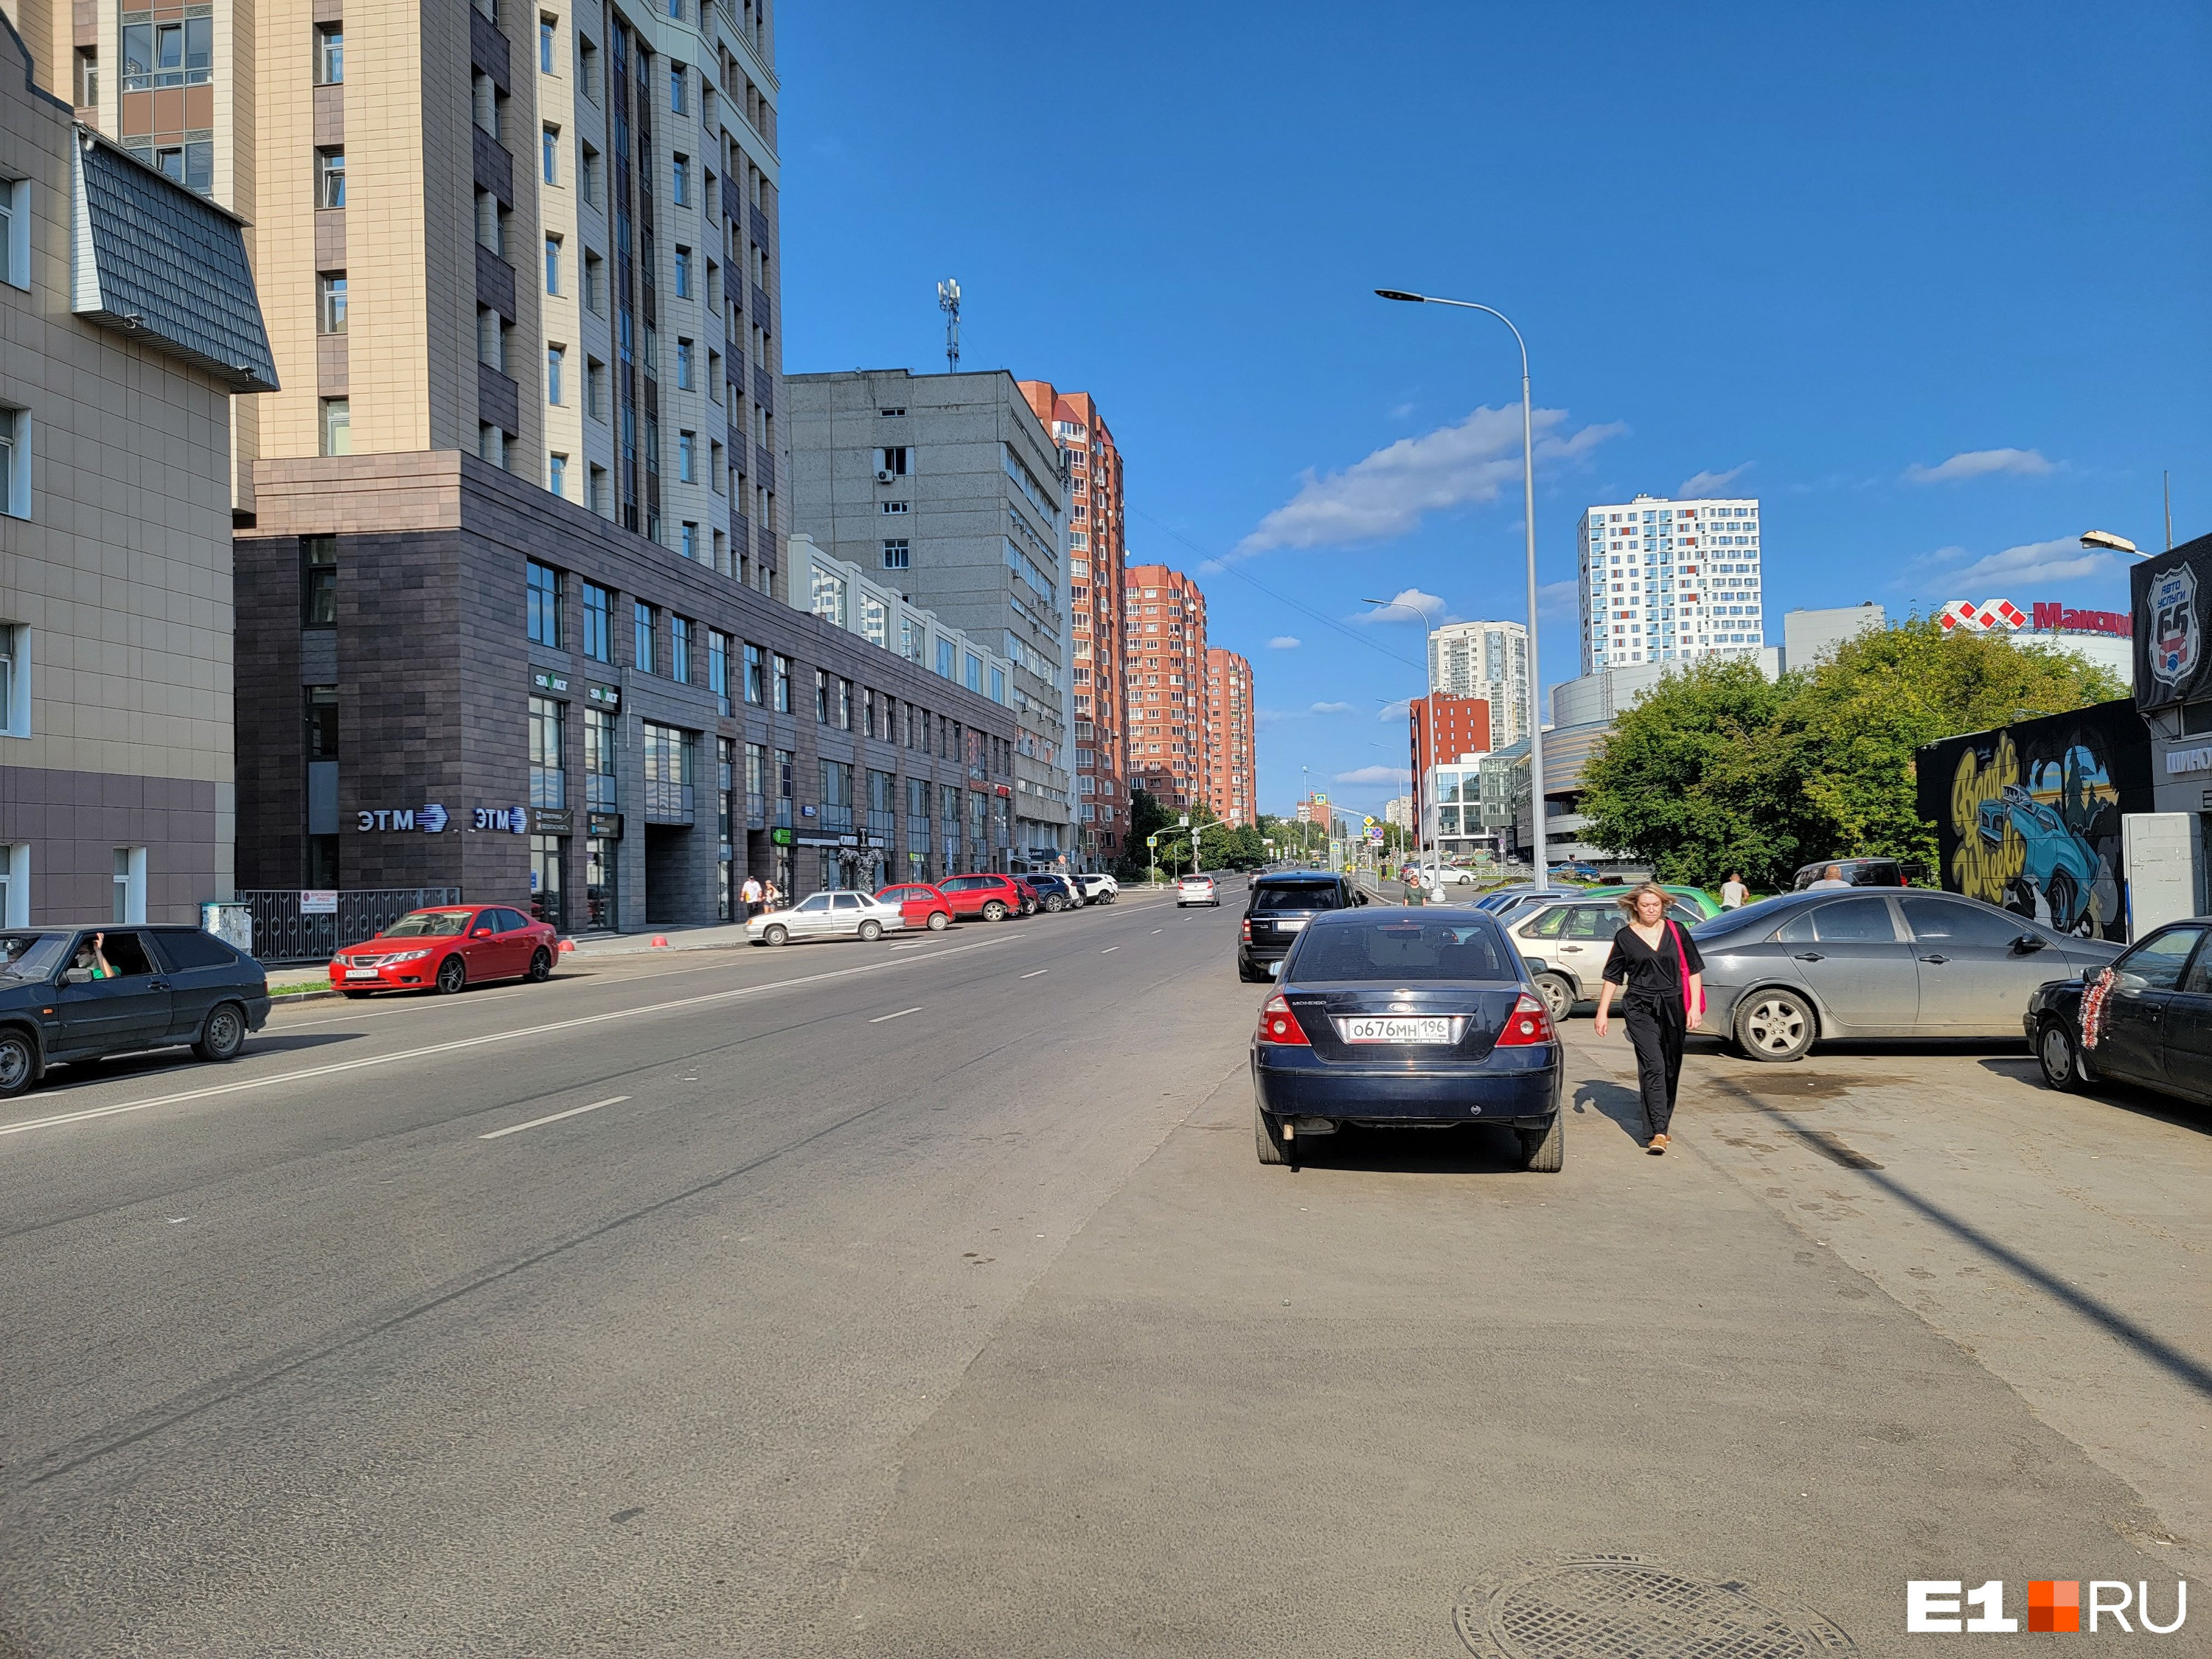 Тротуар закончился раньше улицы: в Екатеринбурге пешеходы рискуют жизнью на проезжей части